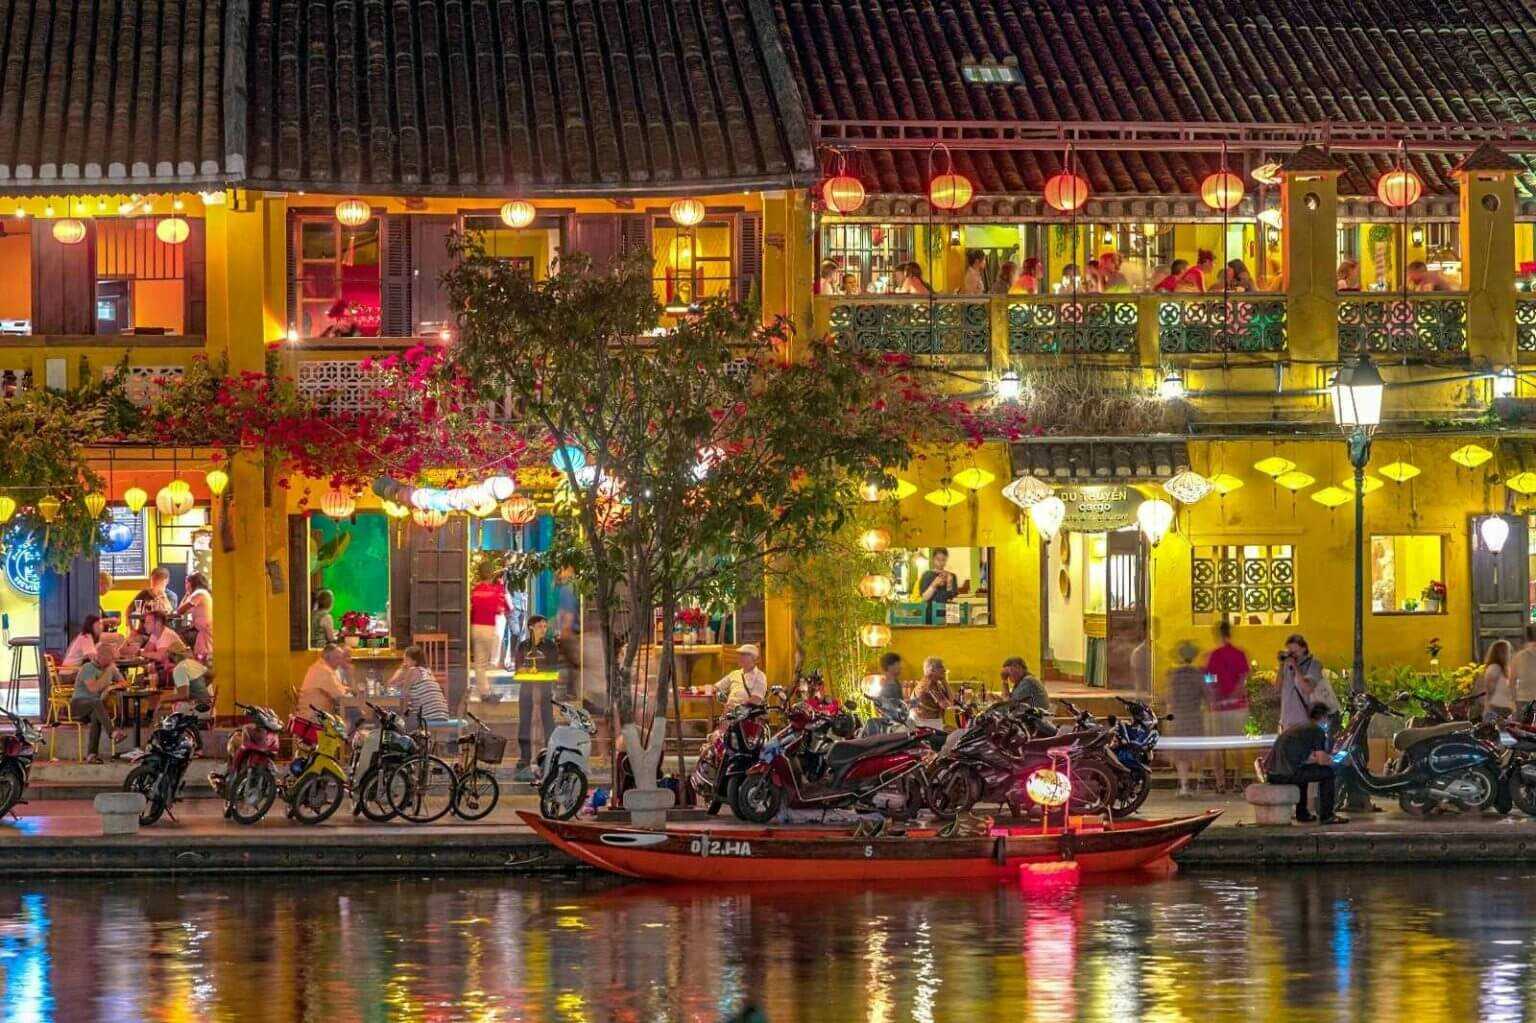 Du lịch Miền Trung - Đà Nẵng - Hội An - Phong Nha mùa Lễ giỗ tổ Hùng Vương đi 5 ngày từ Sài Gòn